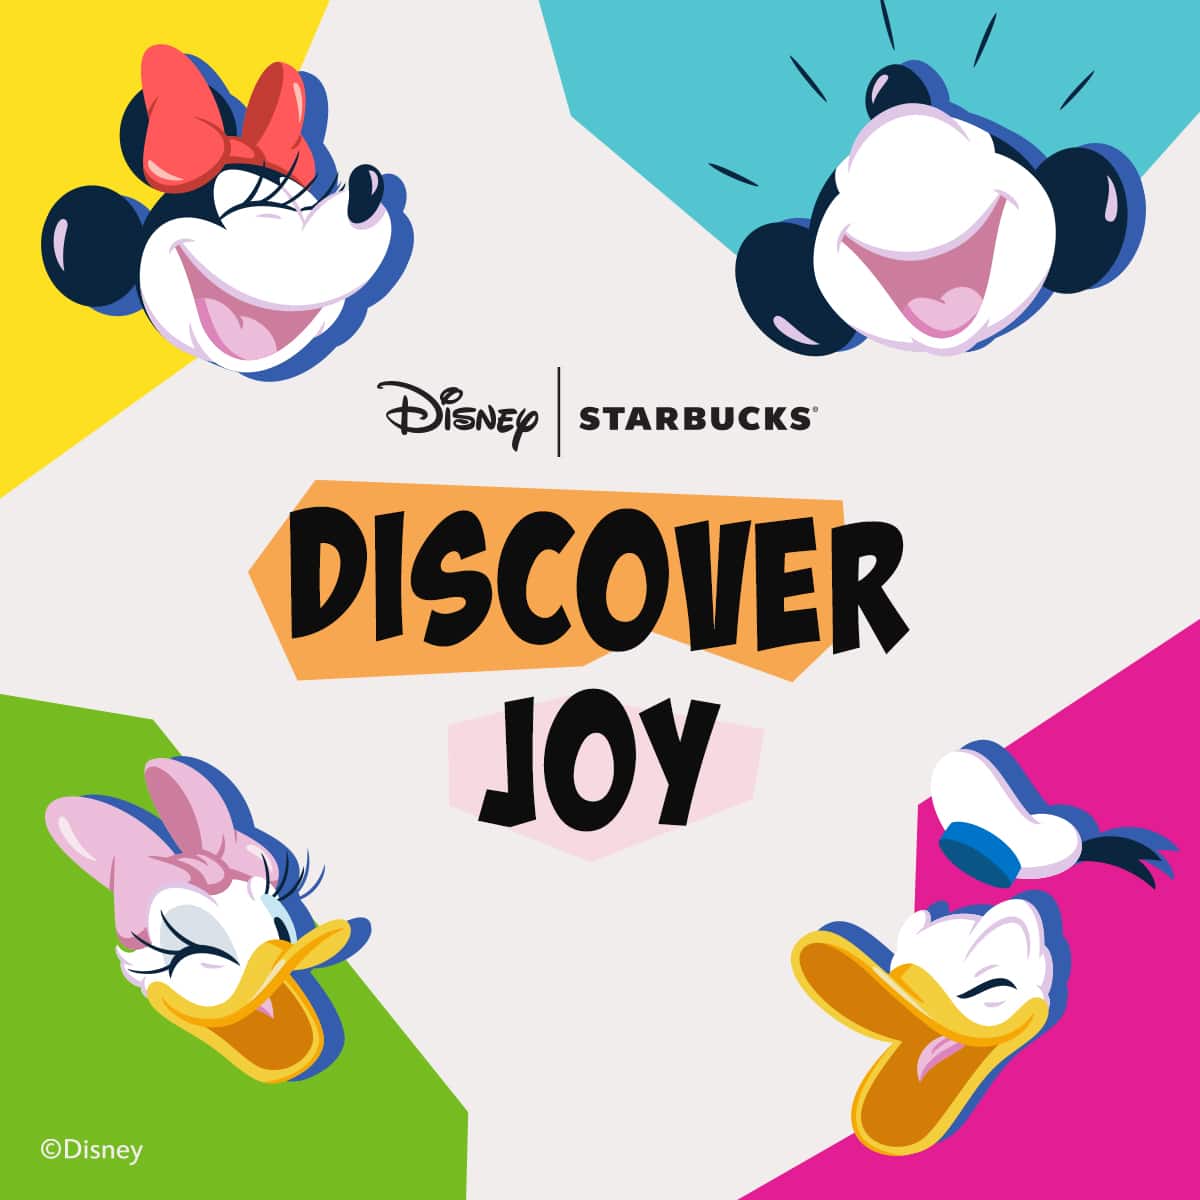 Cùng khám phá thế giới đầy màu sắc ấm áp và kỳ diệu với bộ sưu tập DisneyStarbucks mới nhất ngay hôm nay